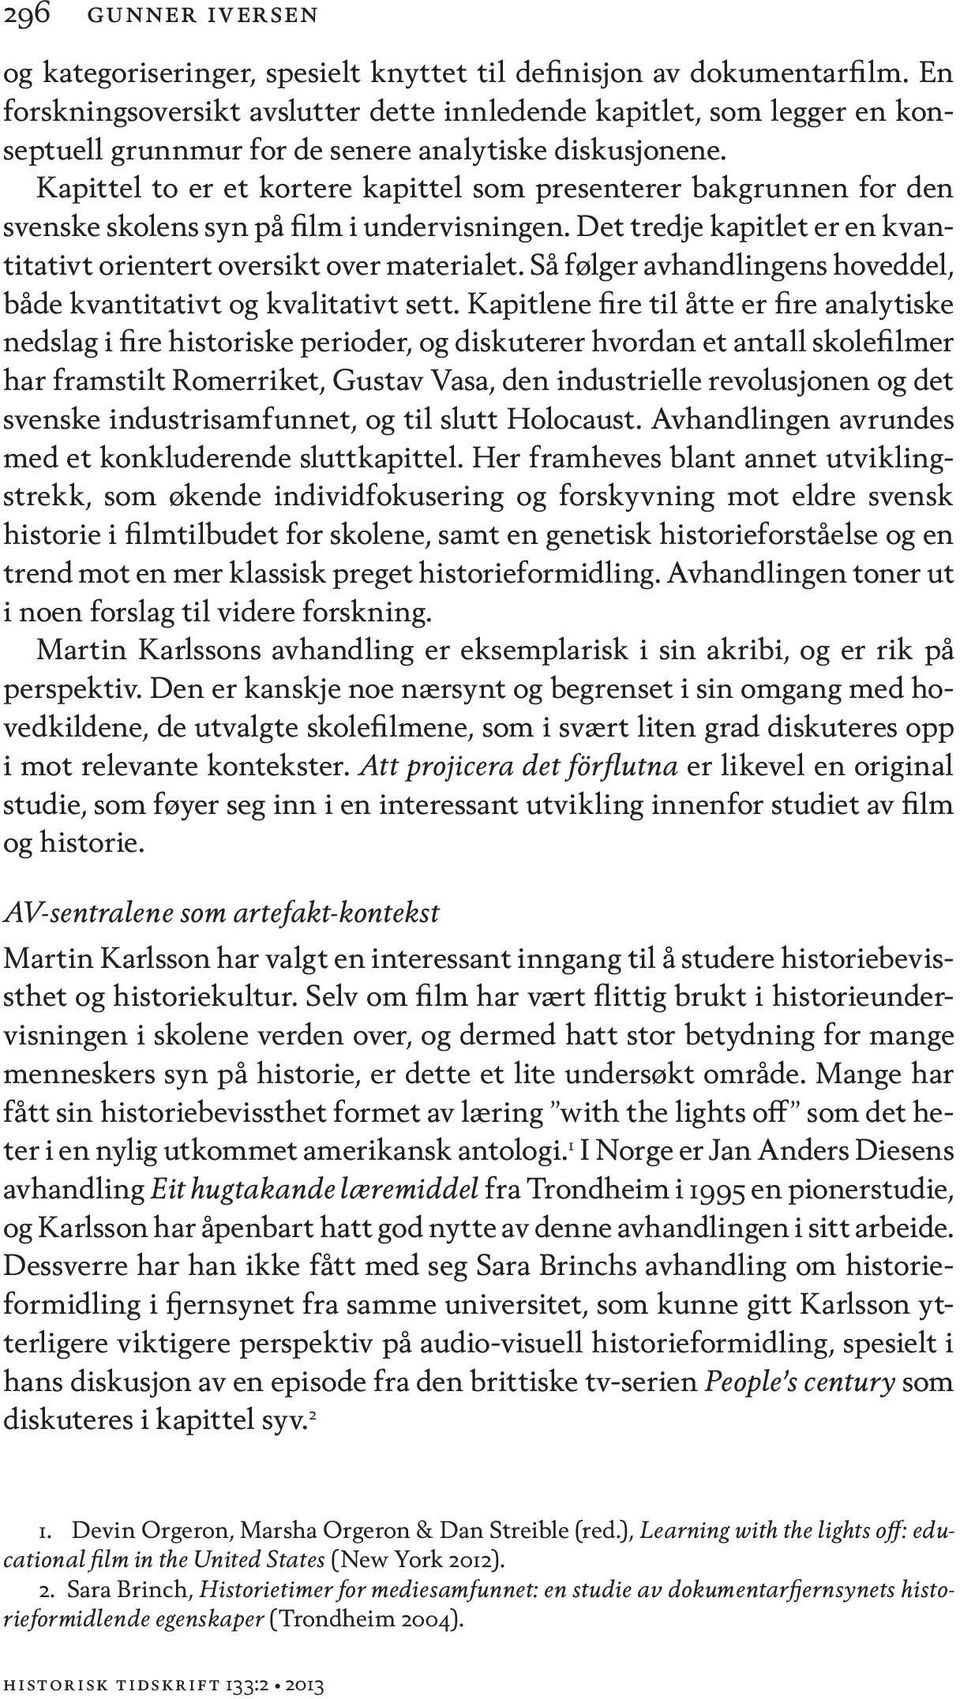 Kapittel to er et kortere kapittel som presenterer bakgrunnen for den svenske skolens syn på film i undervisningen. Det tredje kapitlet er en kvantitativt orientert oversikt over materialet.